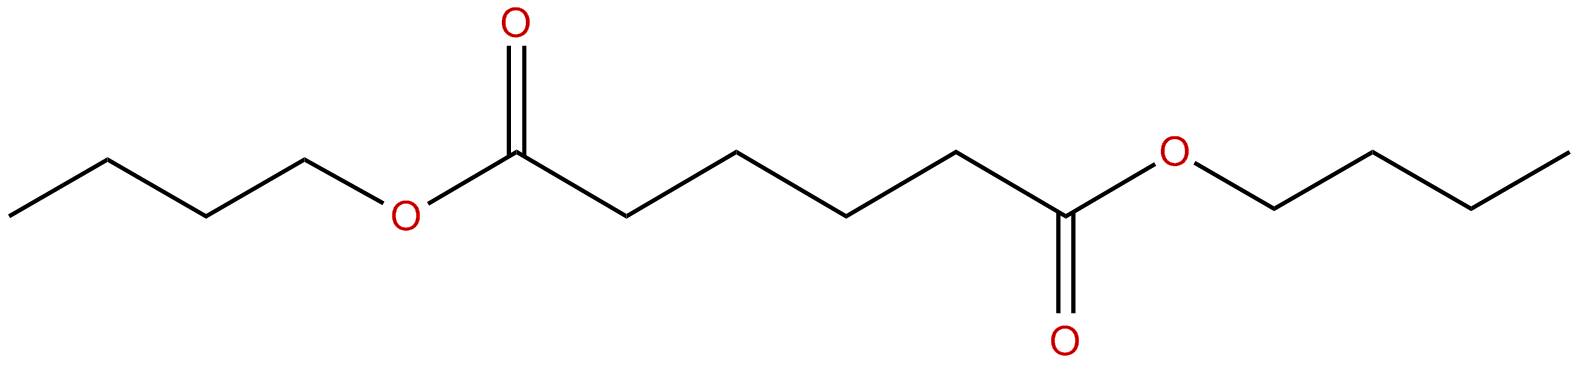 Image of dibutyl hexanedioate